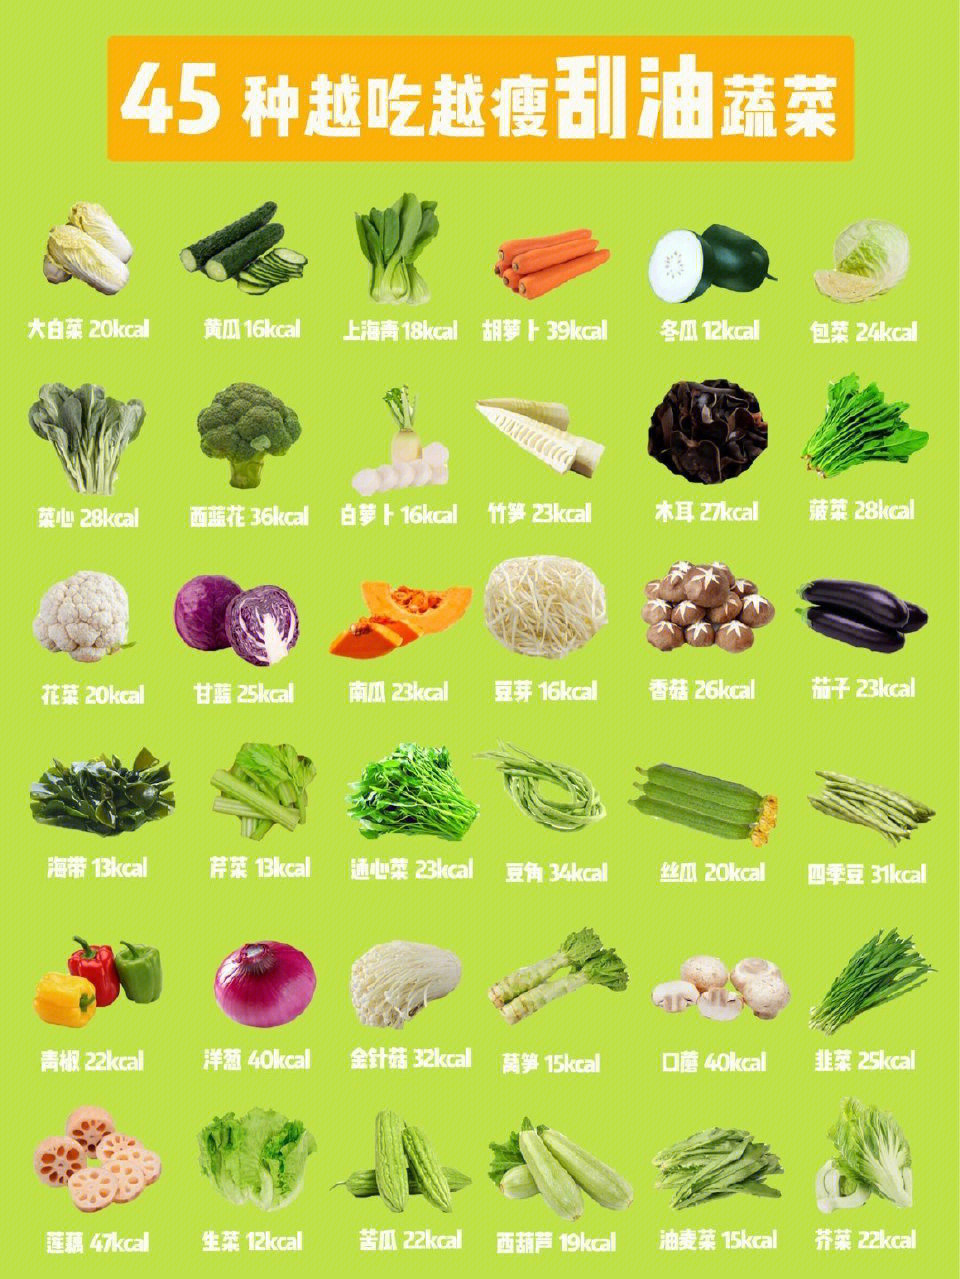 各类蔬菜名称和图片图片